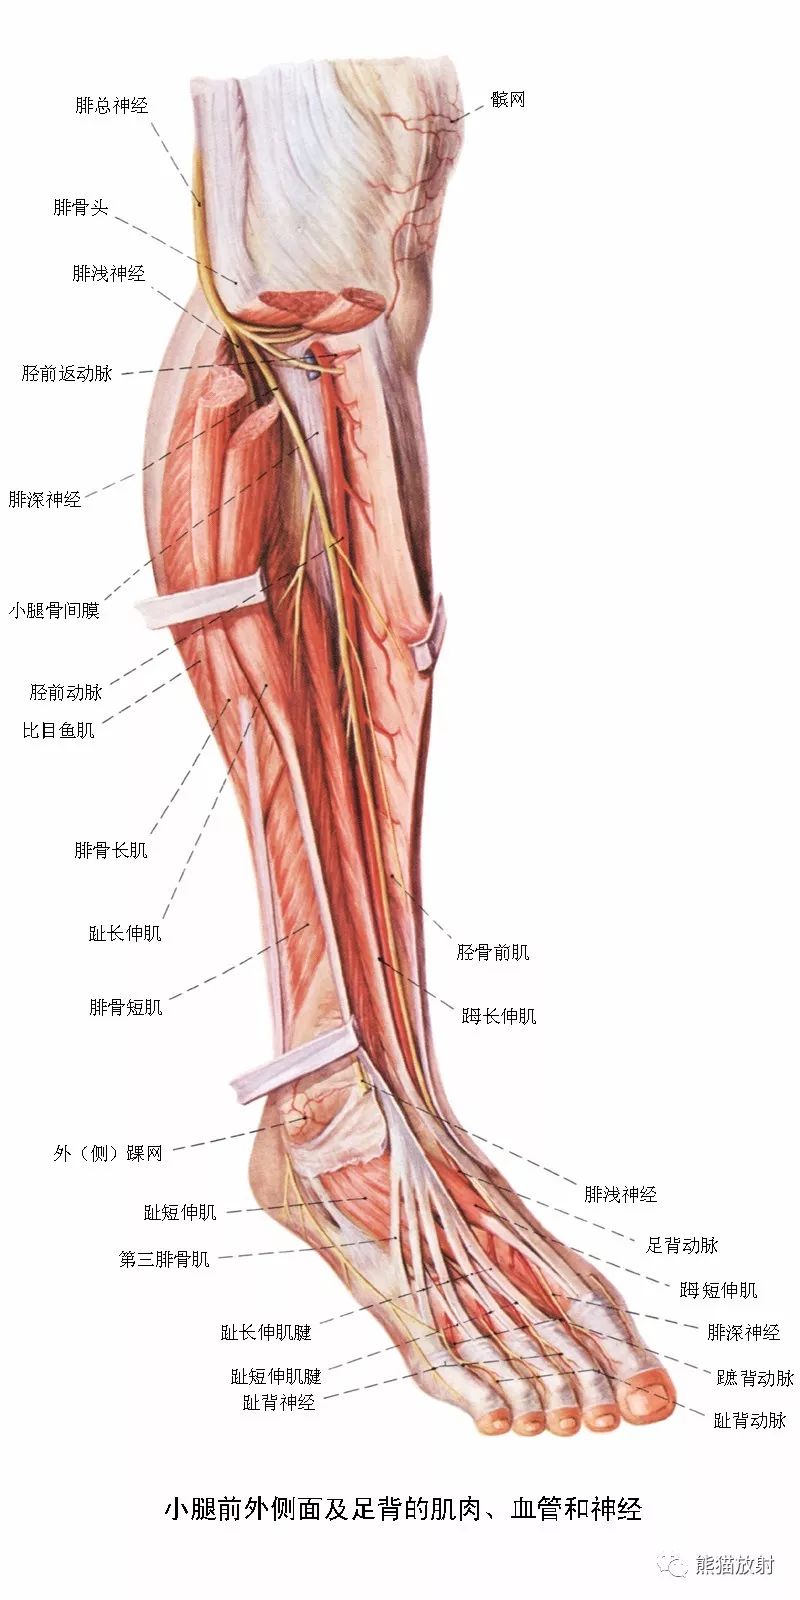 必点收藏丨下肢血管(系统解剖 cta)